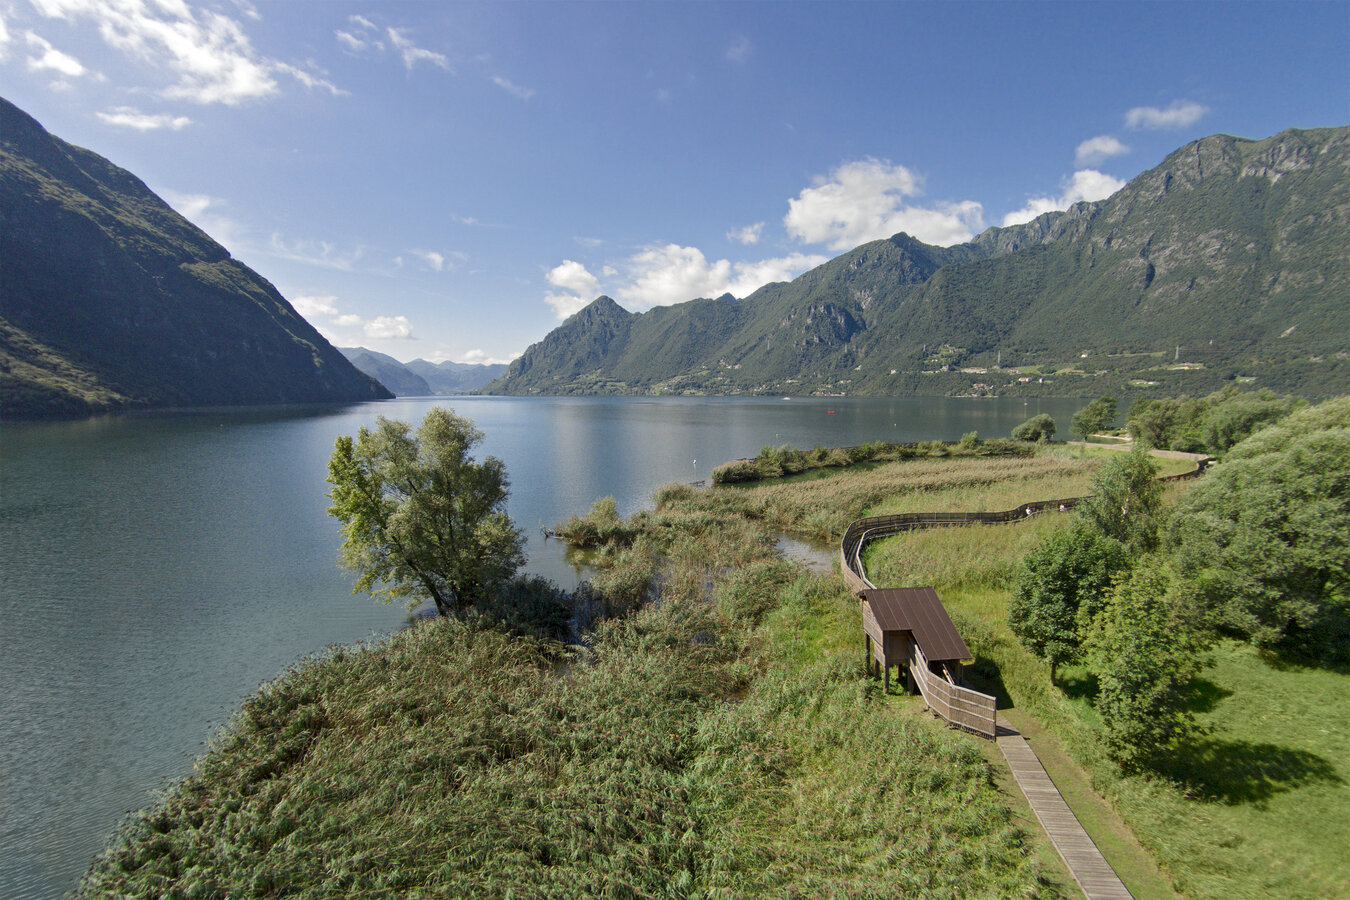 Alpi Ledrensi Reserves Network